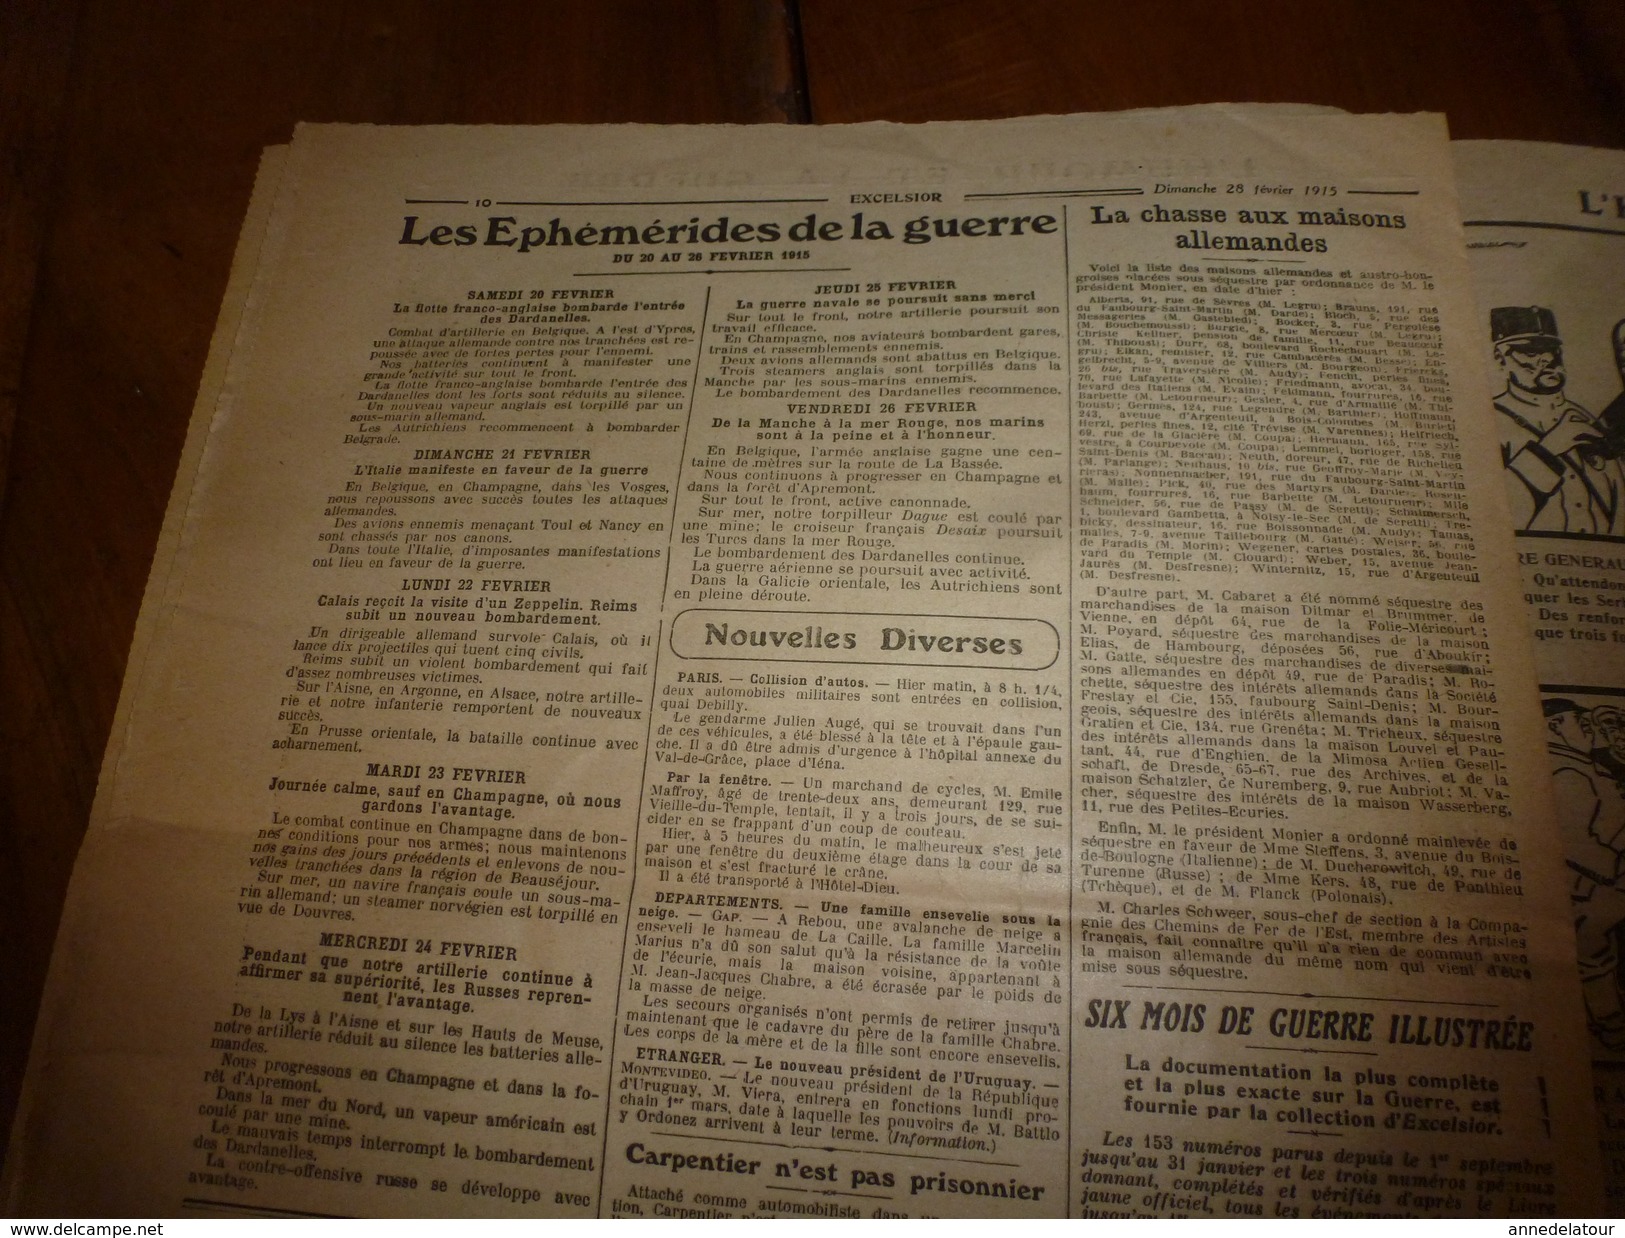 1915 EXCELSIOR :Chanson Le Pain KK; Sus sur HEERENTAGE; Sary-Kamych;Histoire du chien Pervyse; MOULIN-ROUGE incendié;etc